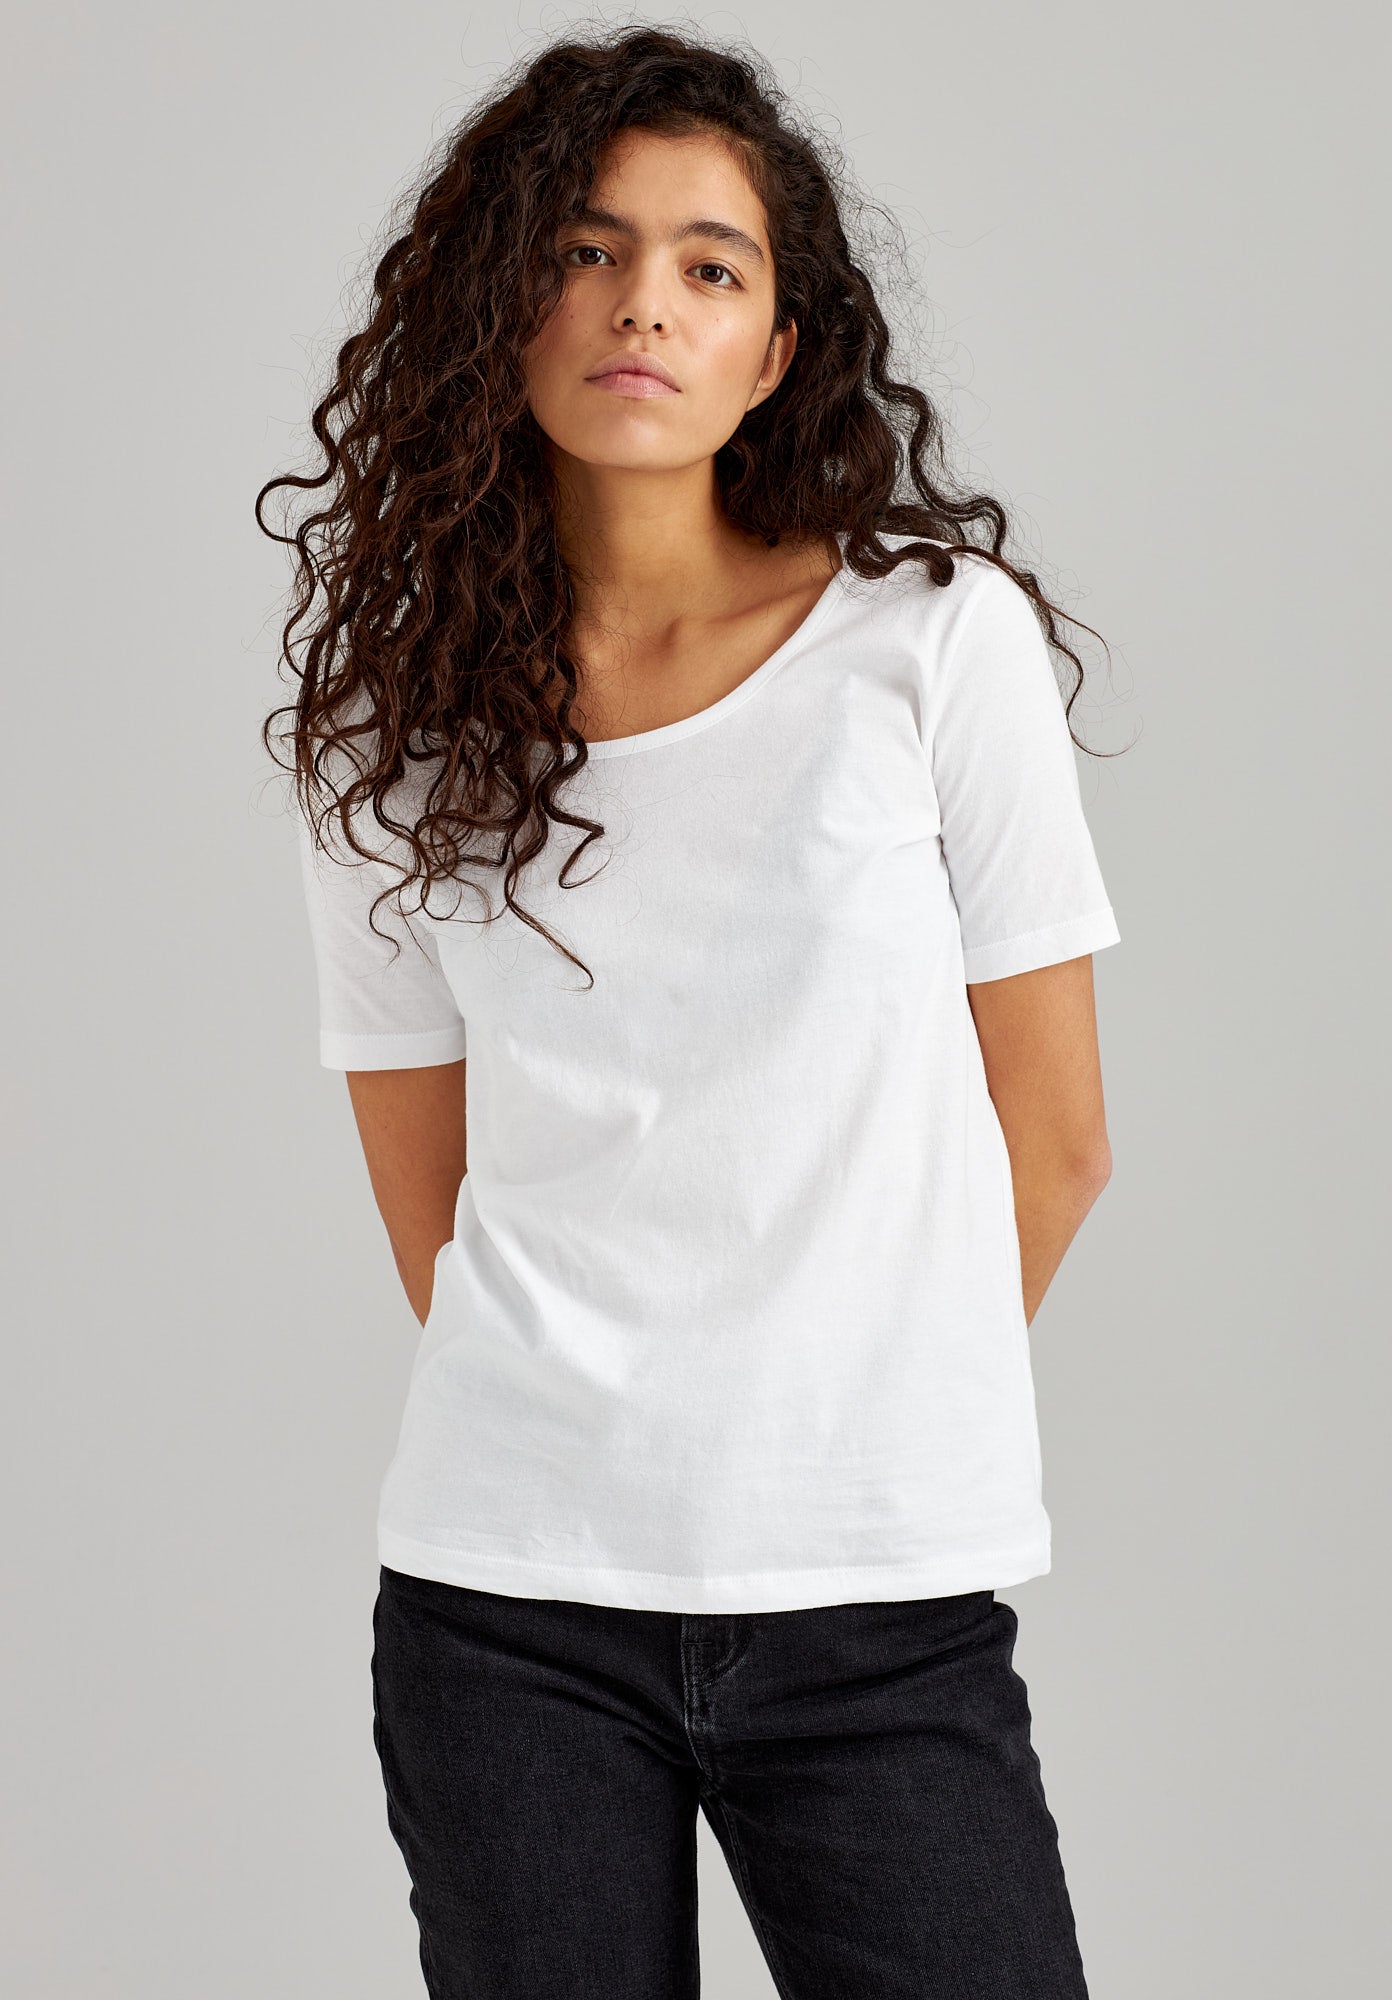 TT64 T-Shirt White